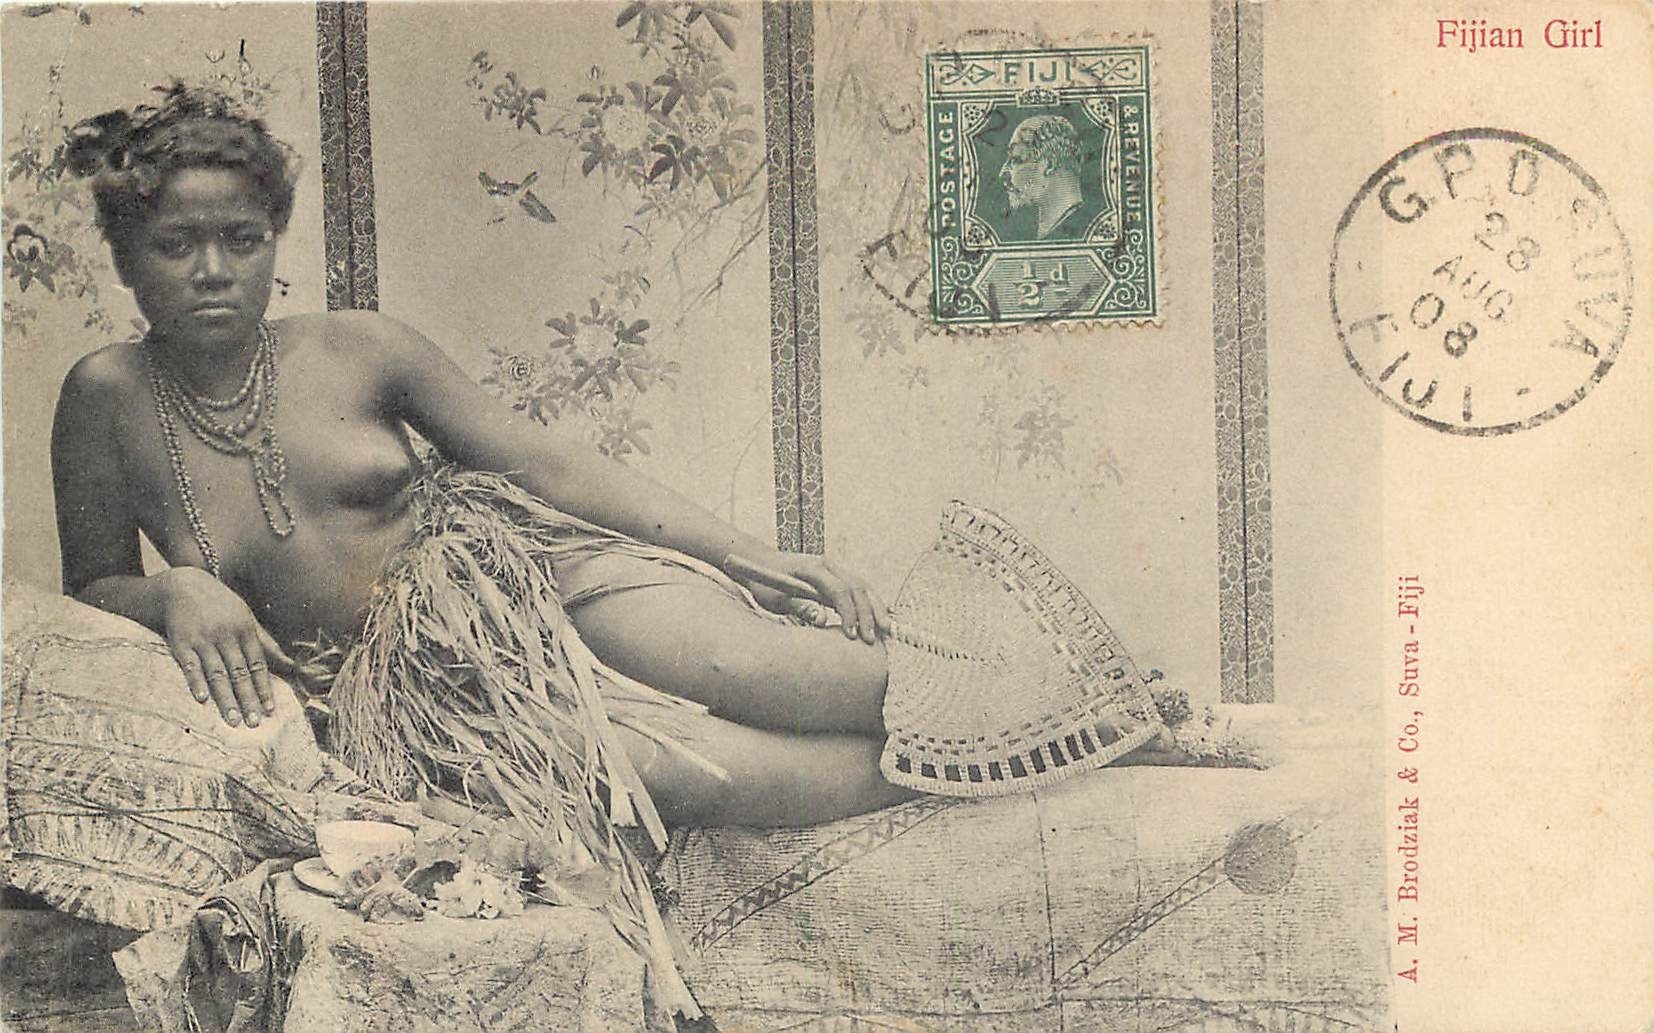 Océanie FIDJI. Fijian Girl 1908